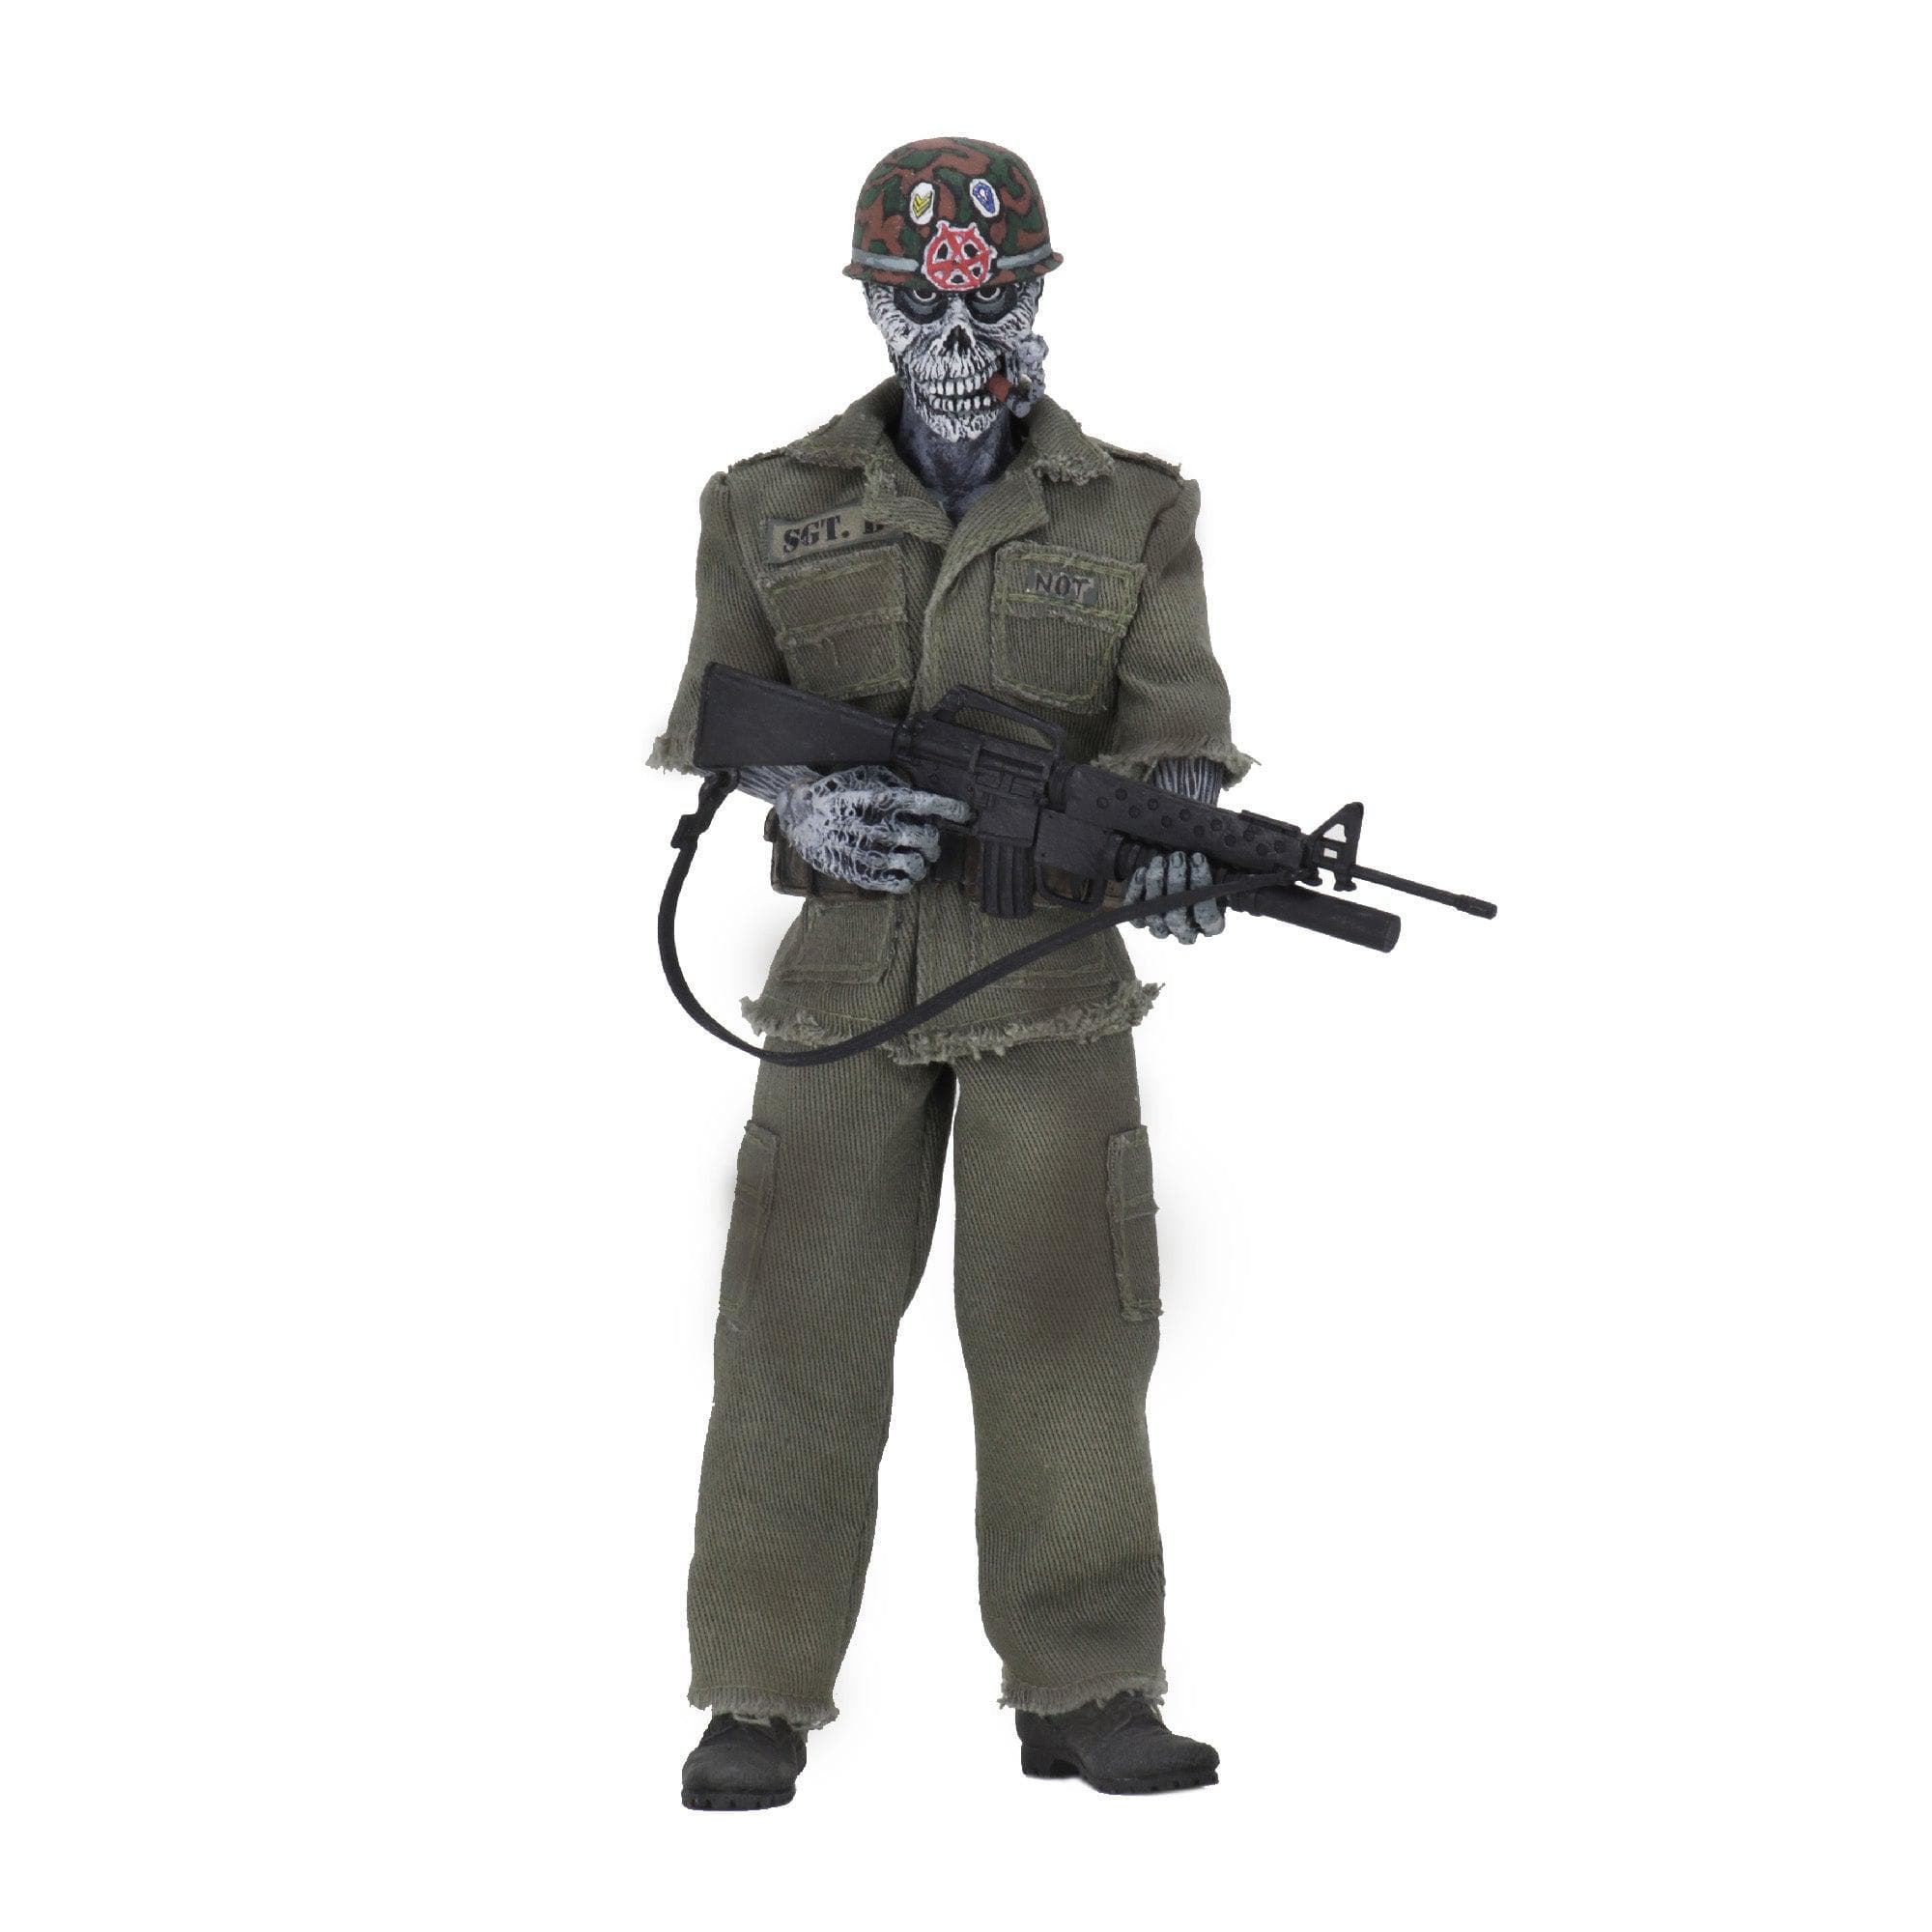 NECA - S.O.D. - 8" Clothed Figure - Sgt. D - costumes.com